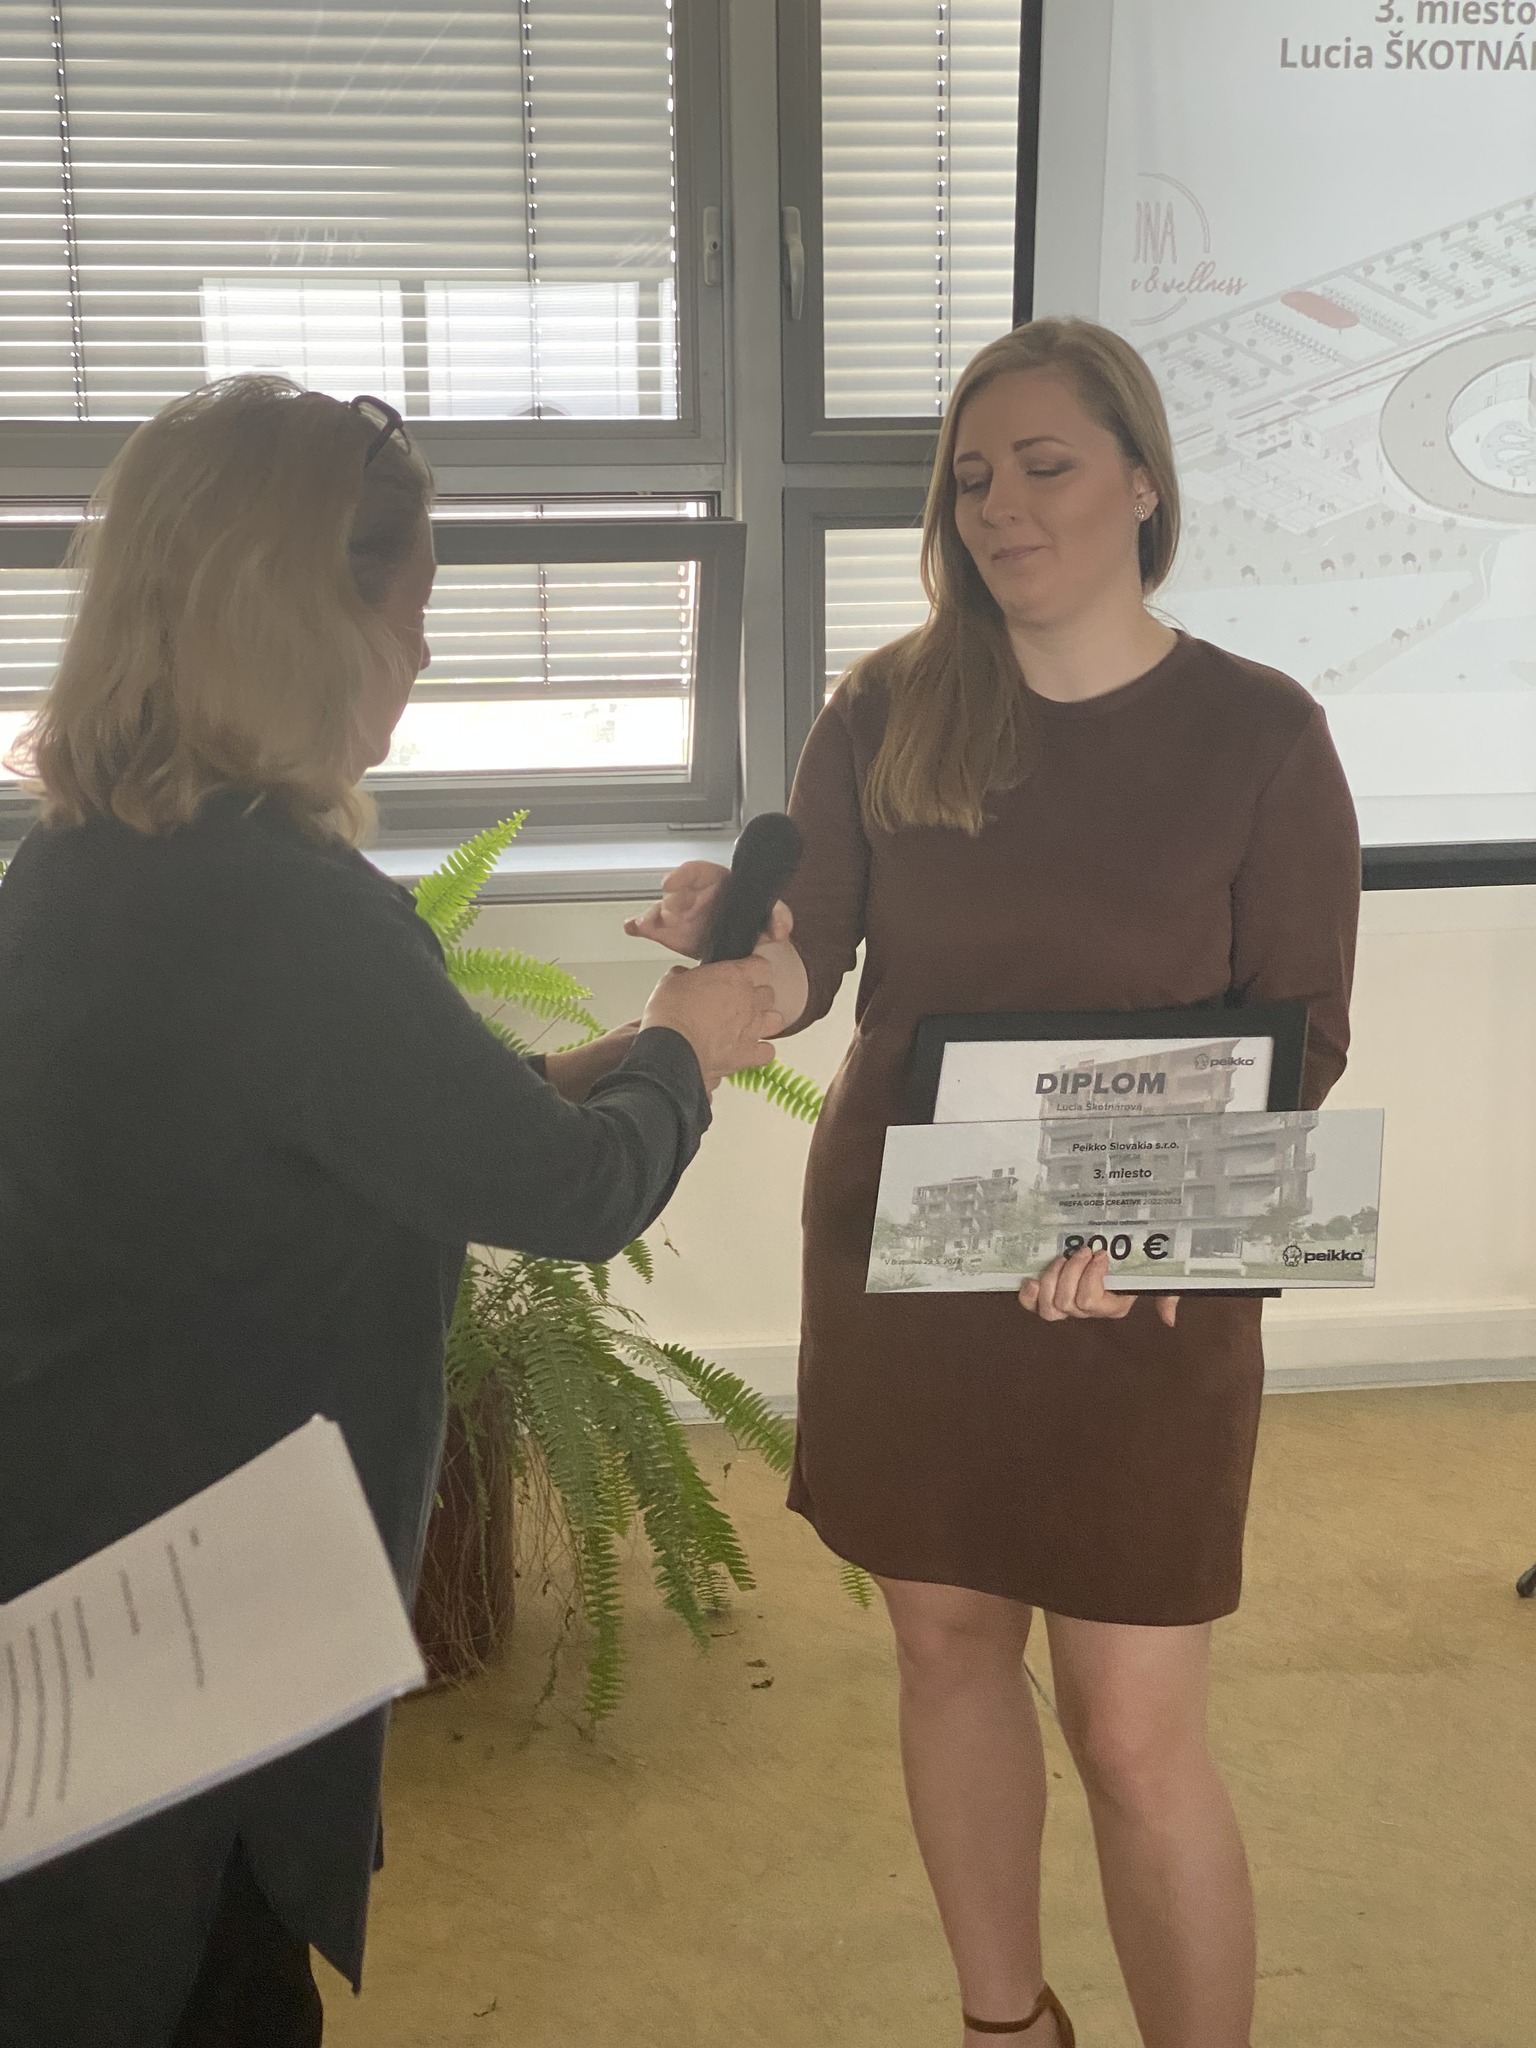 3. miesto získala Lucka Škotnárová a diplom si prevzala od pani architektky Nádaskej. Tešila sa aj z ocenenia Rady pre zelené budovy pre najudržateľnejšie uchopenie projektu.